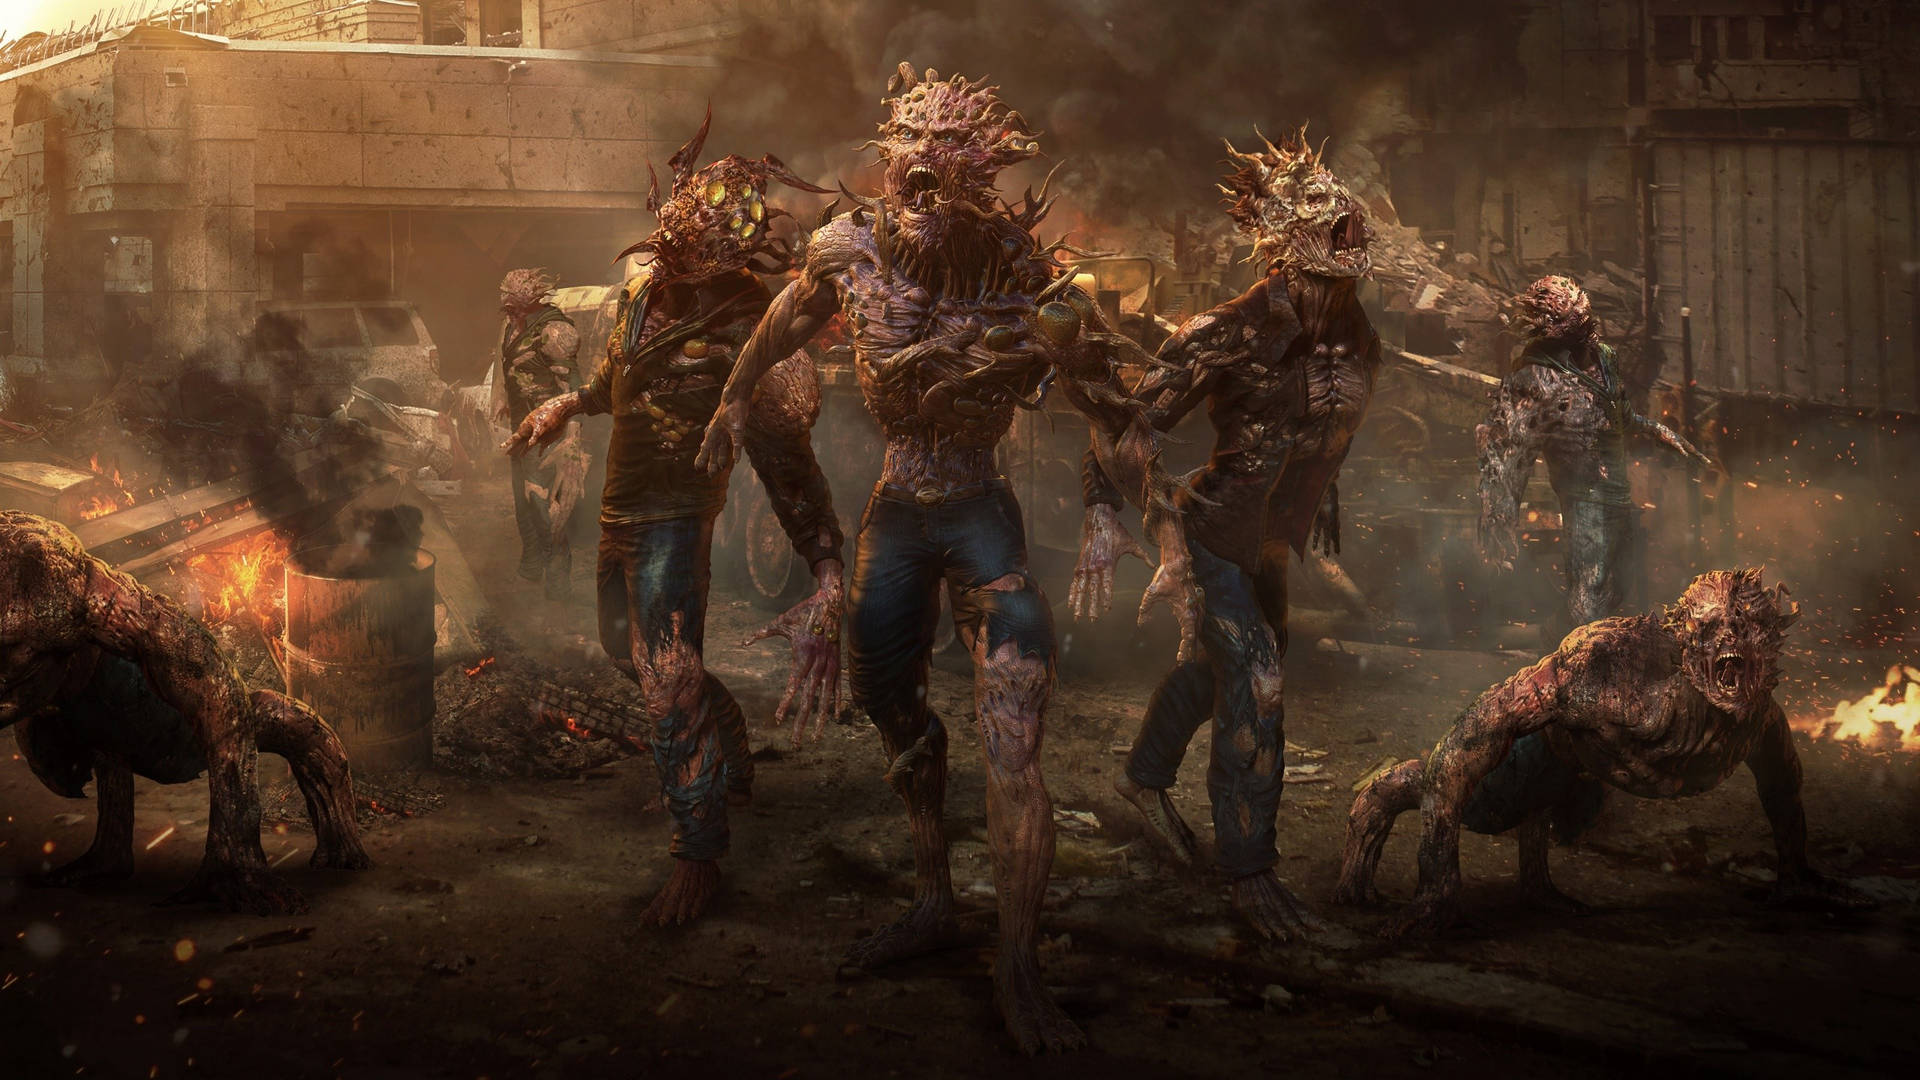 Running Zombie Apocalypse Wallpaper